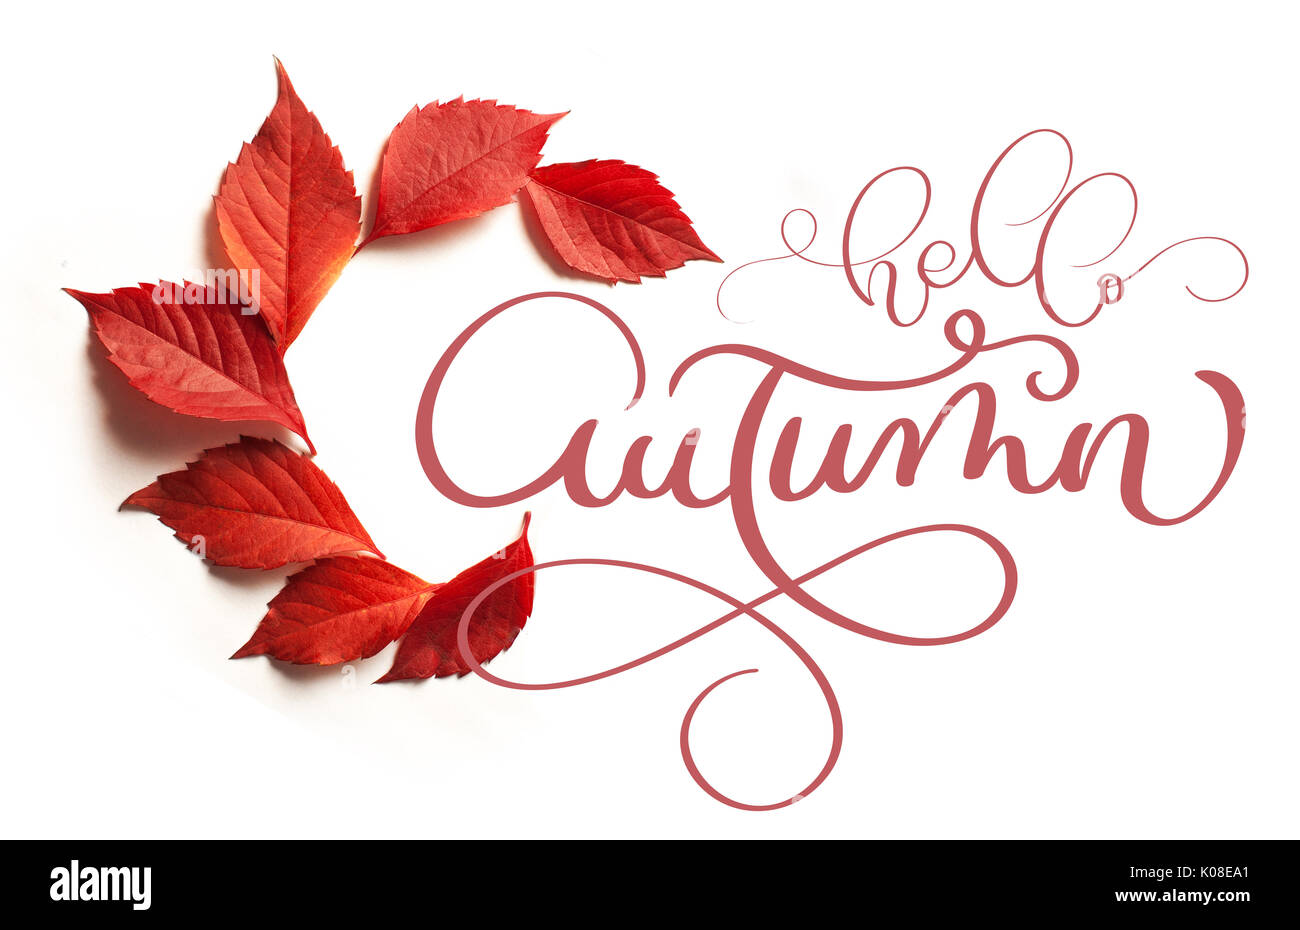 Kalligraphie schrift Text hallo Herbst. Rote Blätter auf weißem Hintergrund Stockfoto